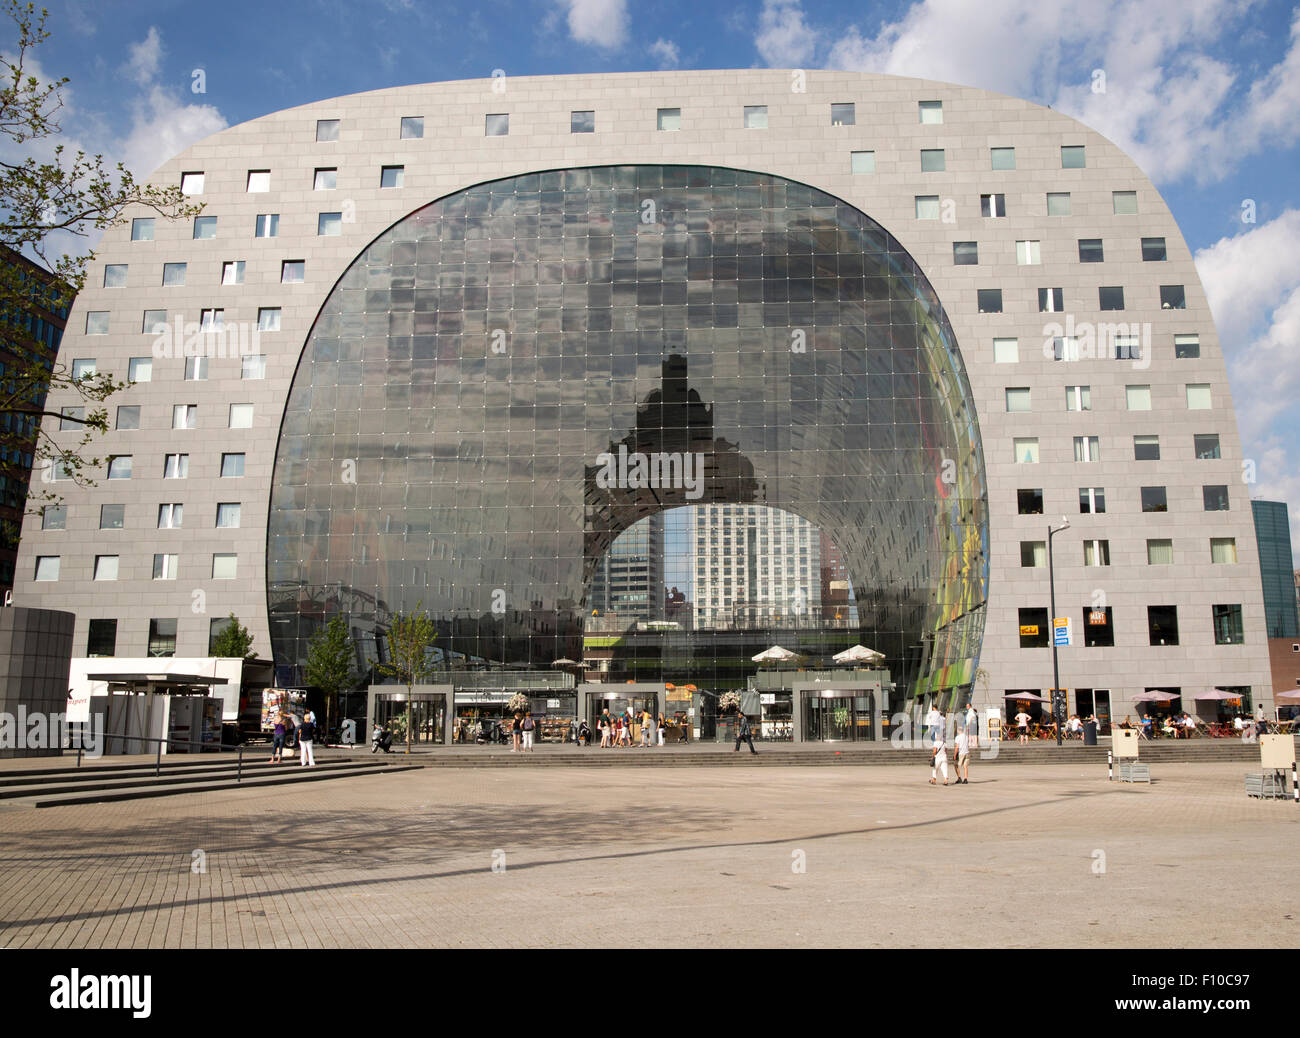 Markthal Gebäude in Binnenrotte, zentrale Rotterdam in den Niederlanden abgeschlossen 2014 Architekten MVRDV Stockfoto